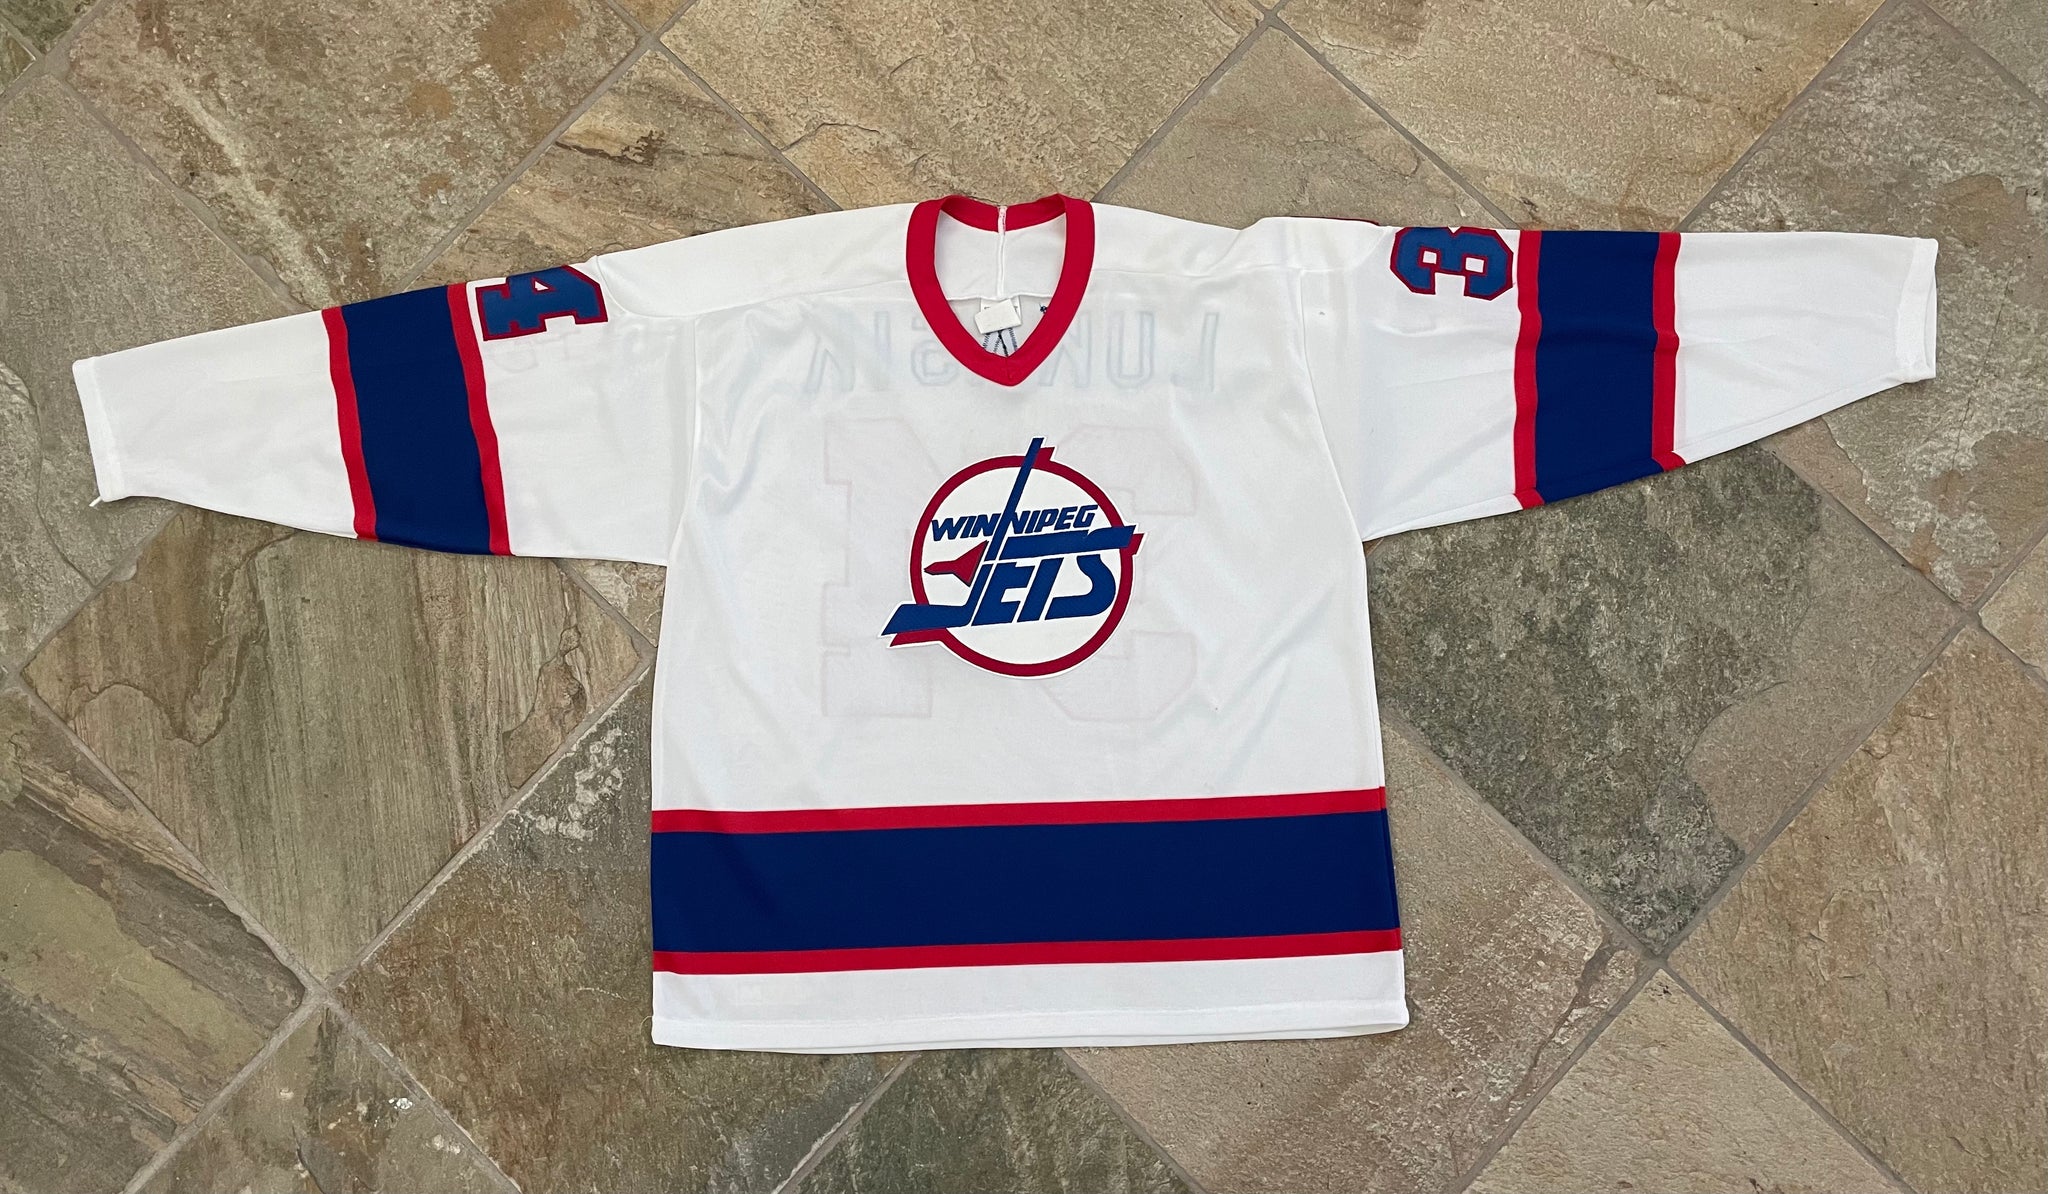 Vintage Winnipeg Jets CCM Hockey Jersey 